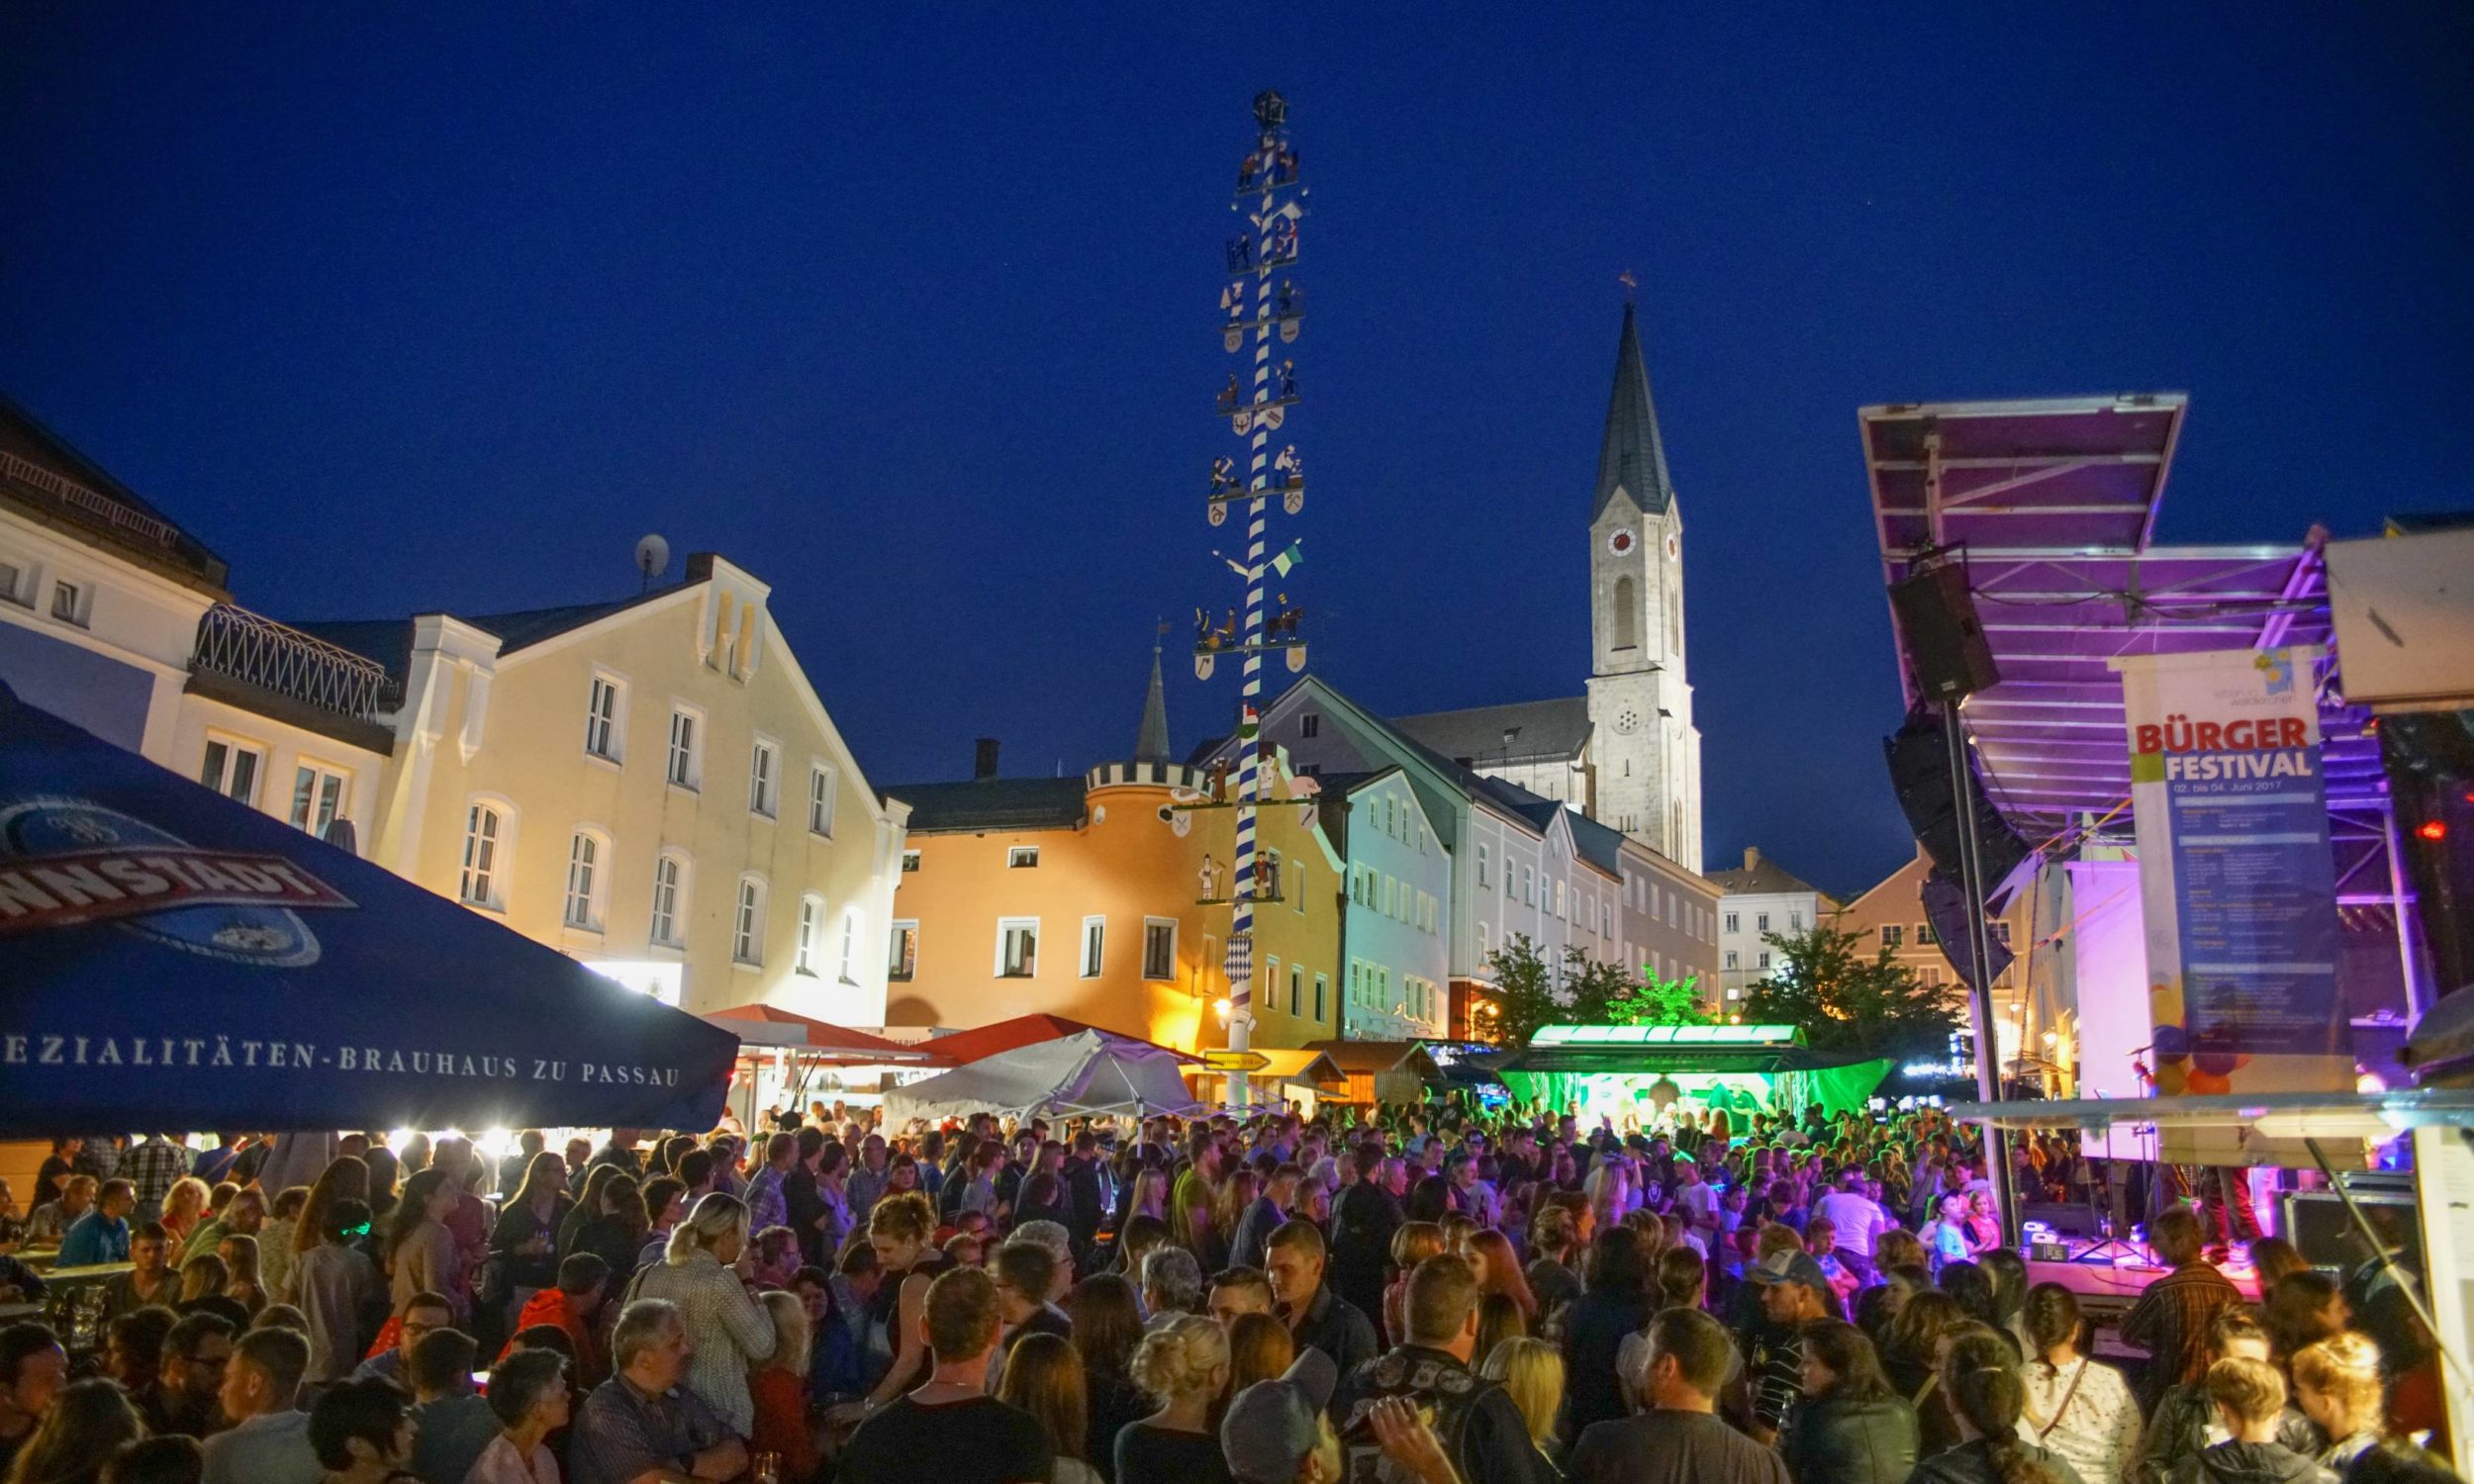 Bürgerfestival Waldkirchen